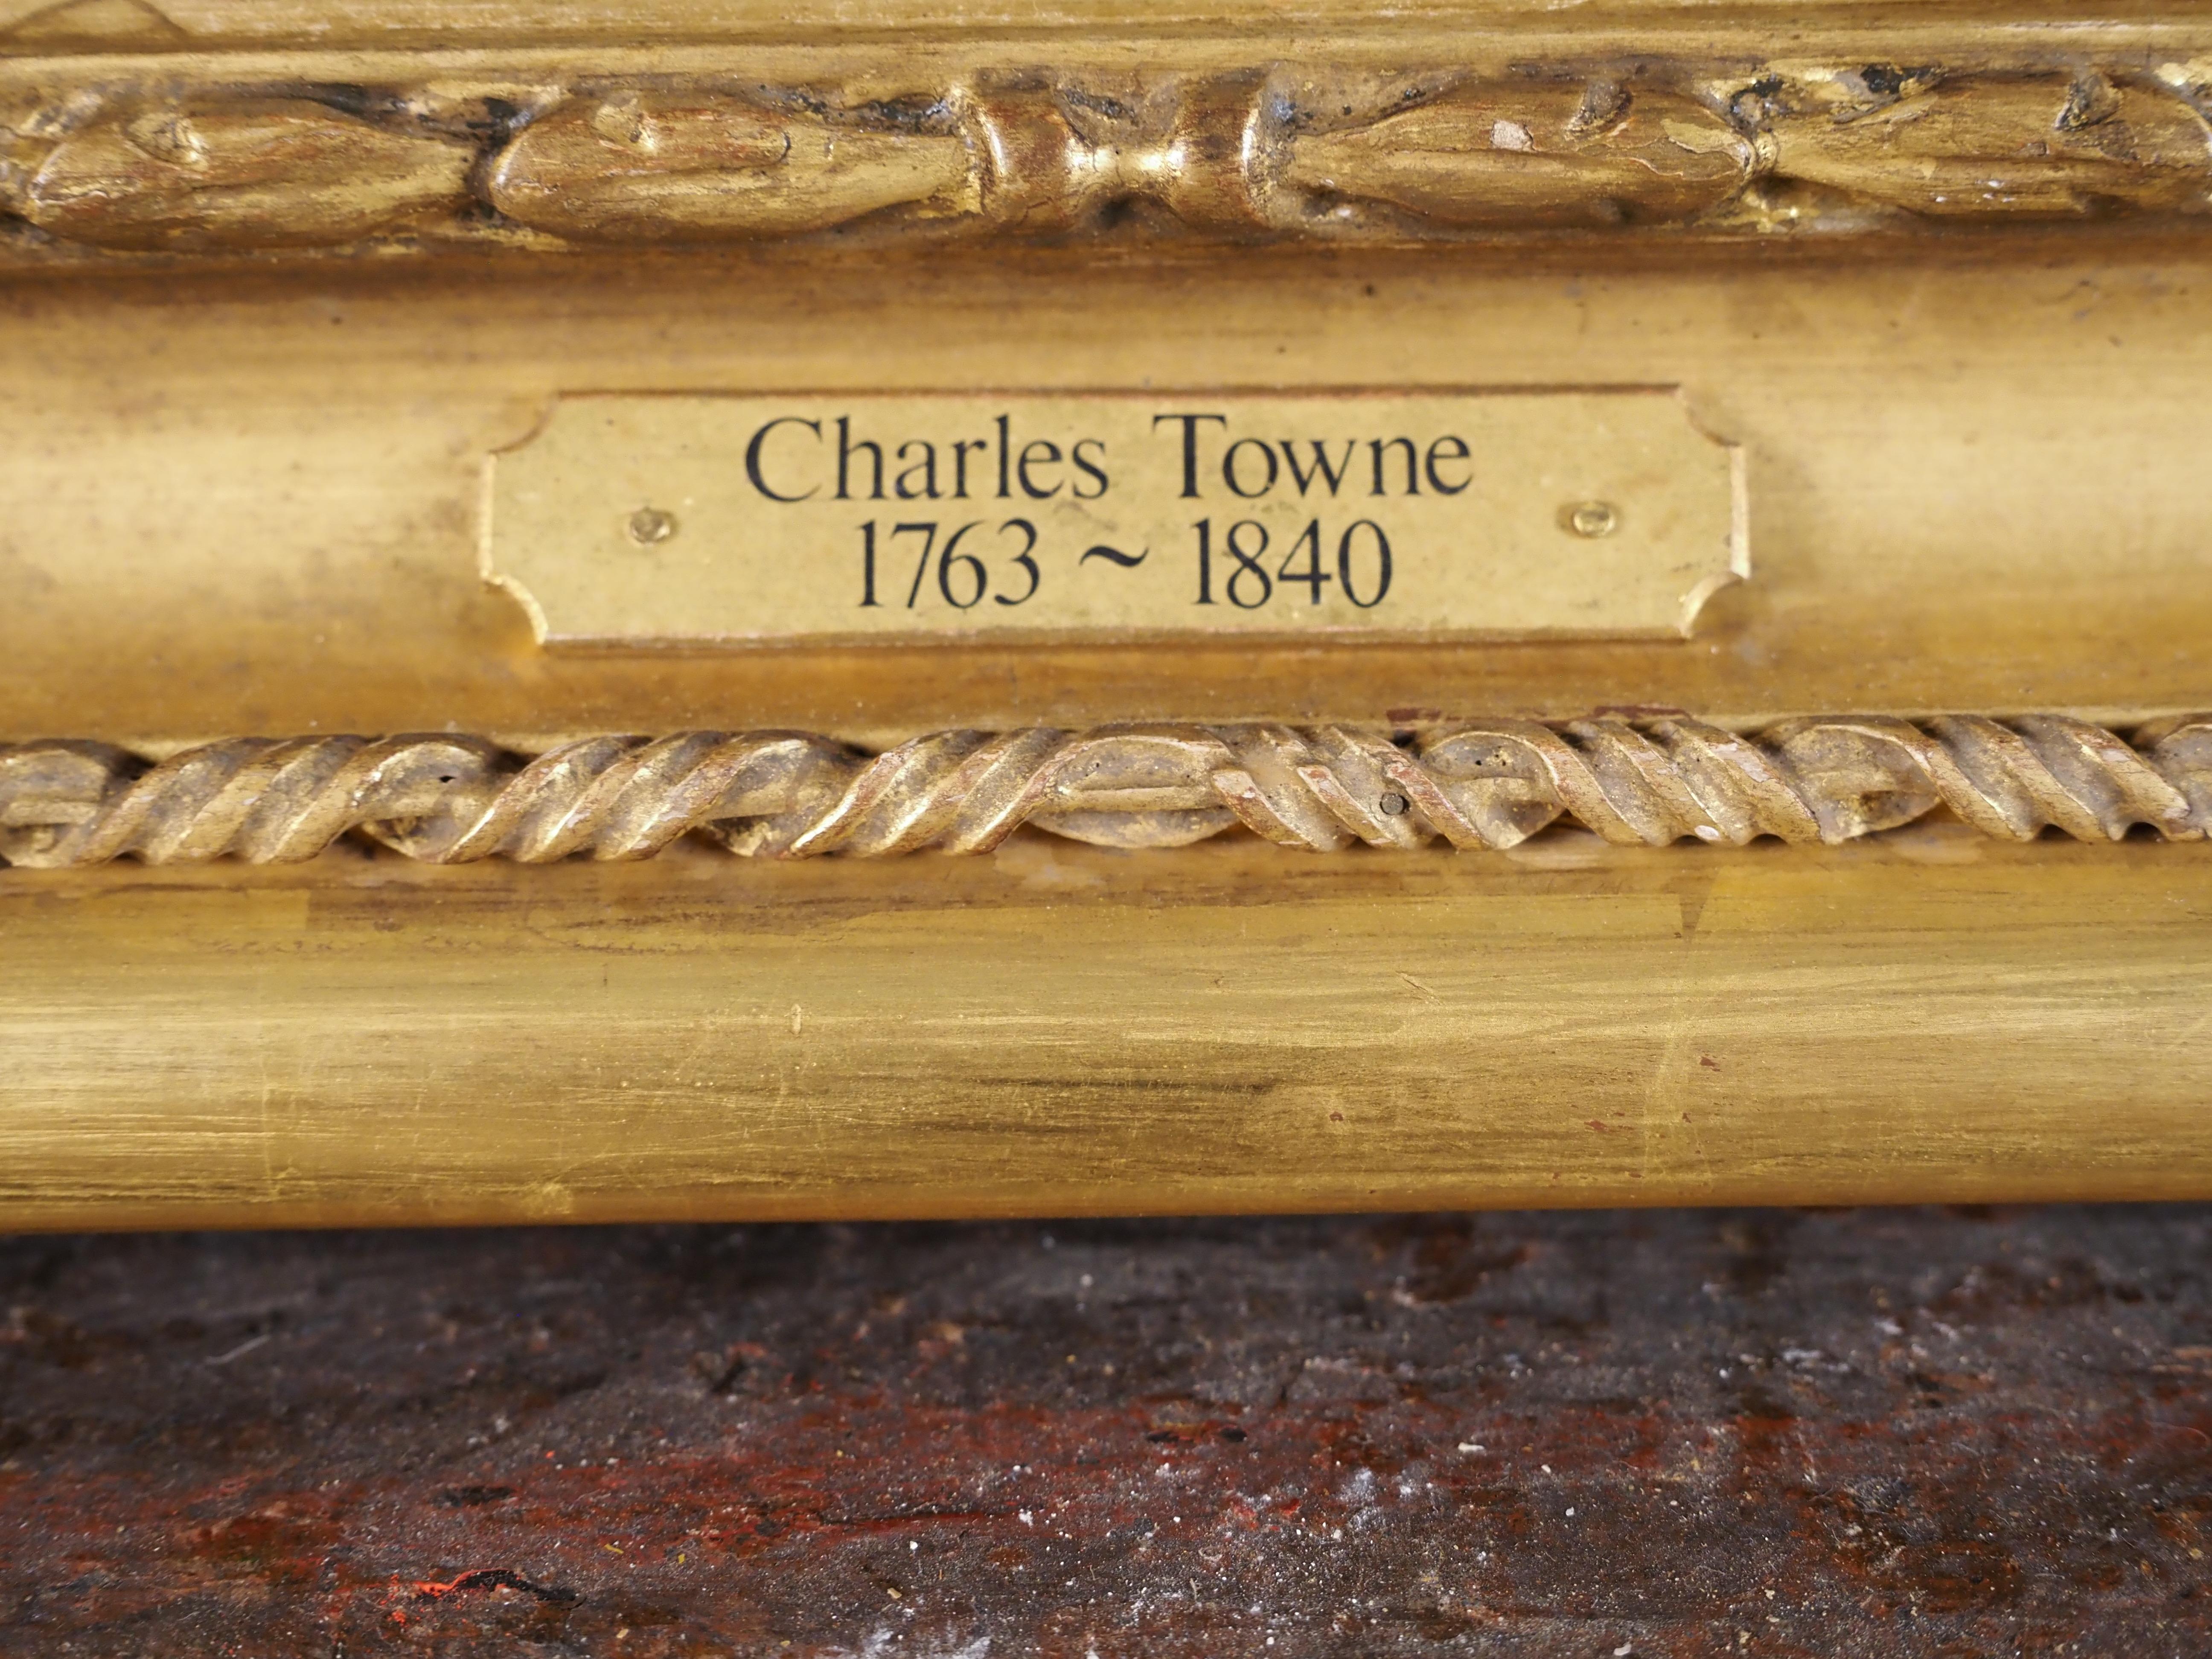 Charles Townes (1763-1840)
Londres : Vue lointaine de la ville depuis le sud, avec au premier plan un bouvier et du bétail
Huile sur toile posée sur panneau
Taille de la toile - 14 1/2 x 19 pouces
Format encadré - 19 x 24 in

Provenance
Vente,